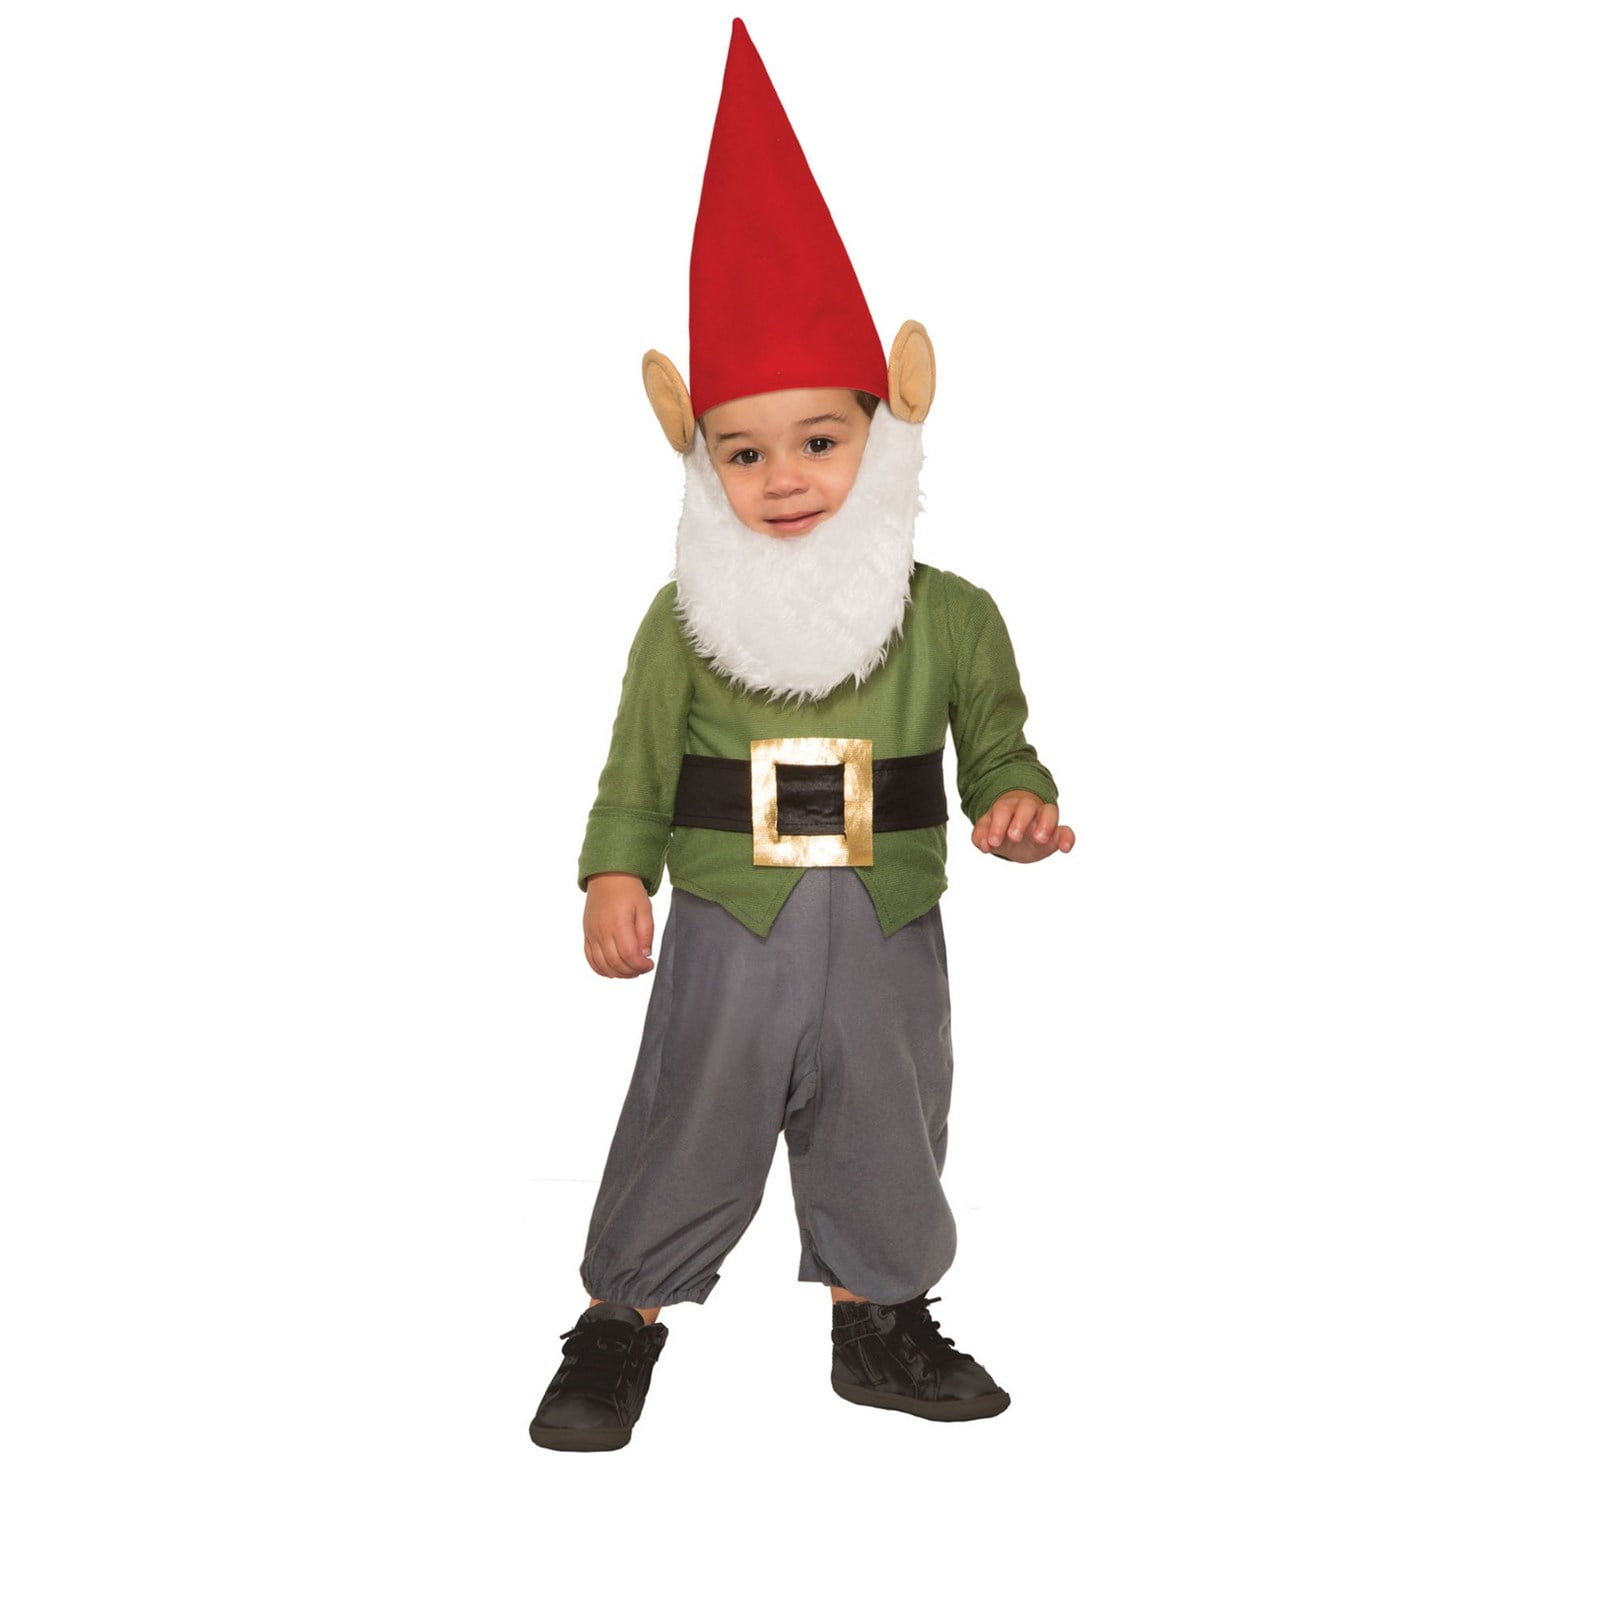 size 18-24 months or size 2T Details about   Gymboree Boys Gnome Costume EUC 